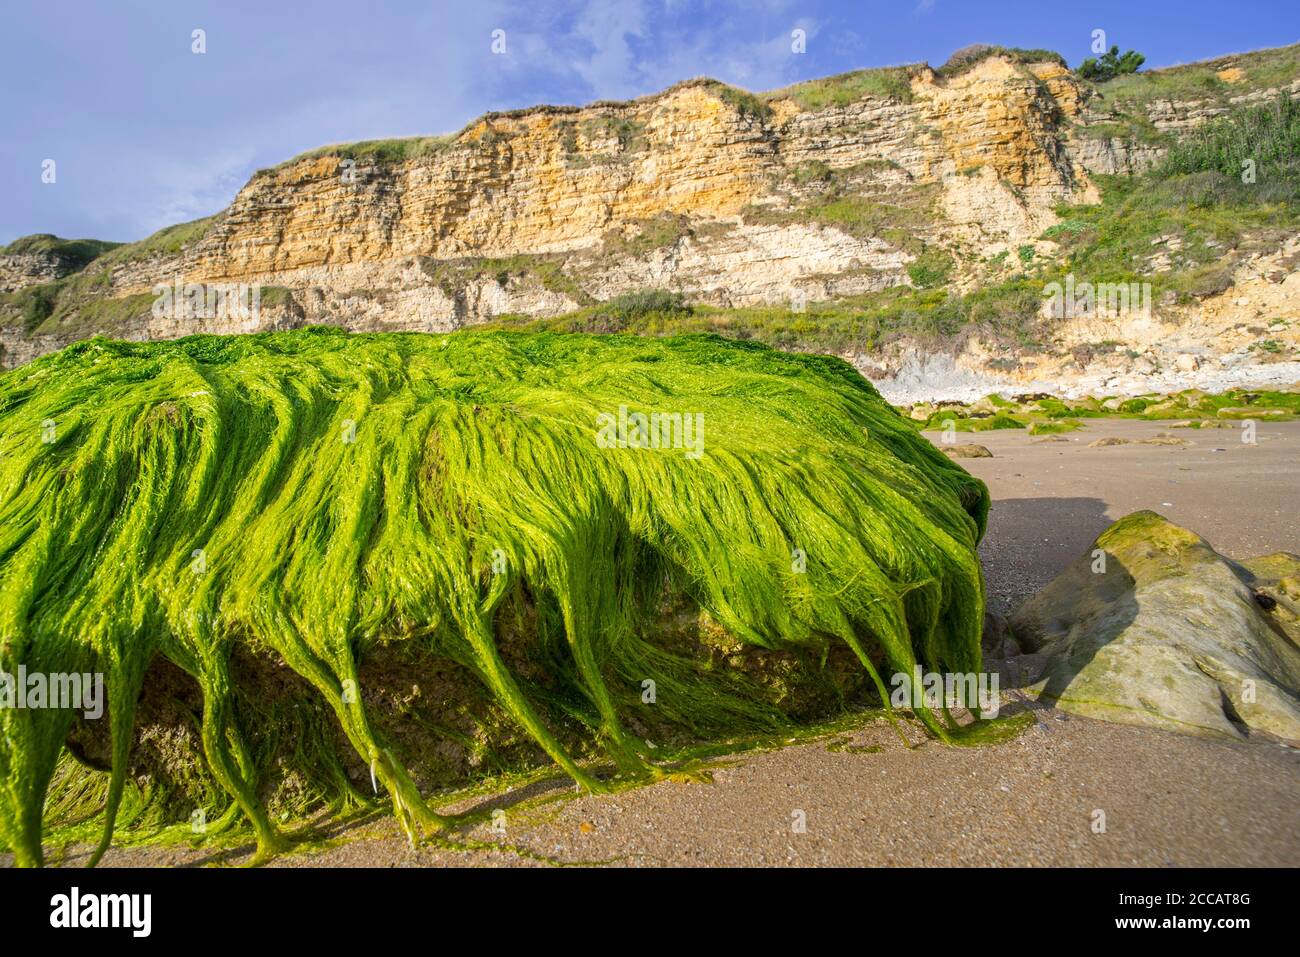 Bultos de la especificación Enteromorpha. / Ulva SPEC., alga verde especie de gutweed (Ulvaceae) creciendo en roca en la playa en marea baja, Normandía, Francia Foto de stock